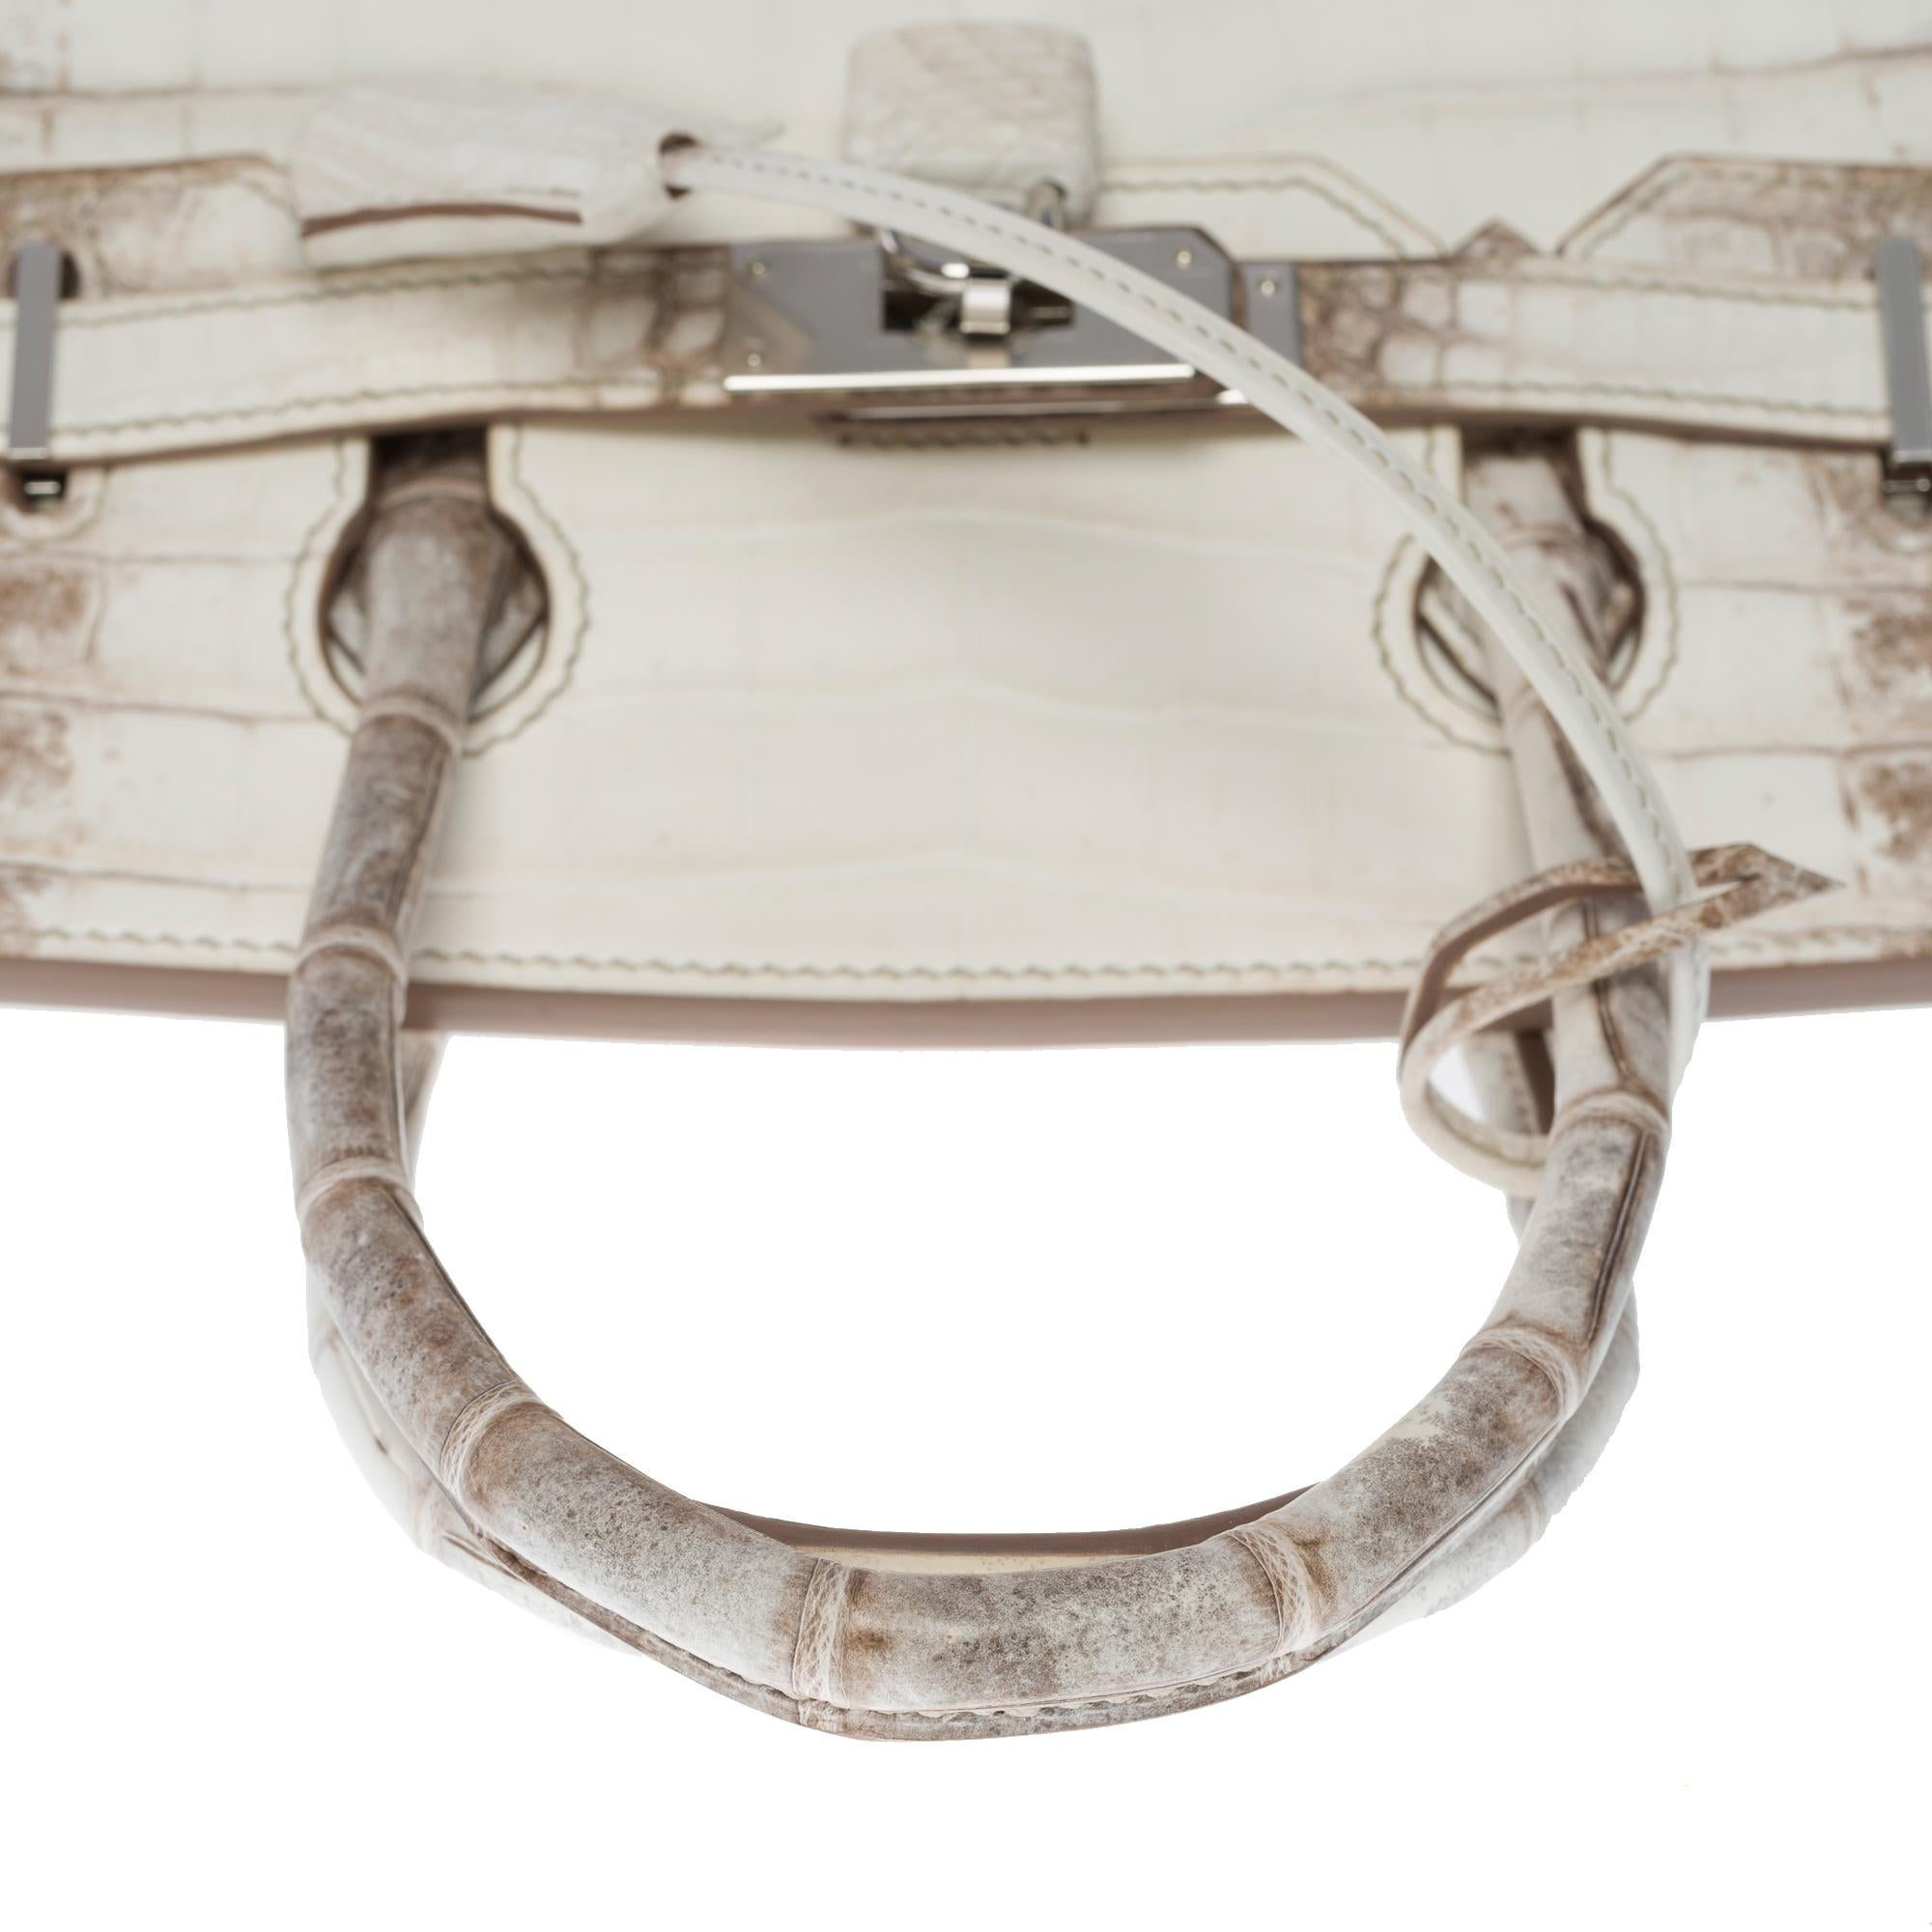 Seltene neue Hermès Birkin 30 Himalaya Handtasche in weißem Nilkrokodilleder, SHW 6